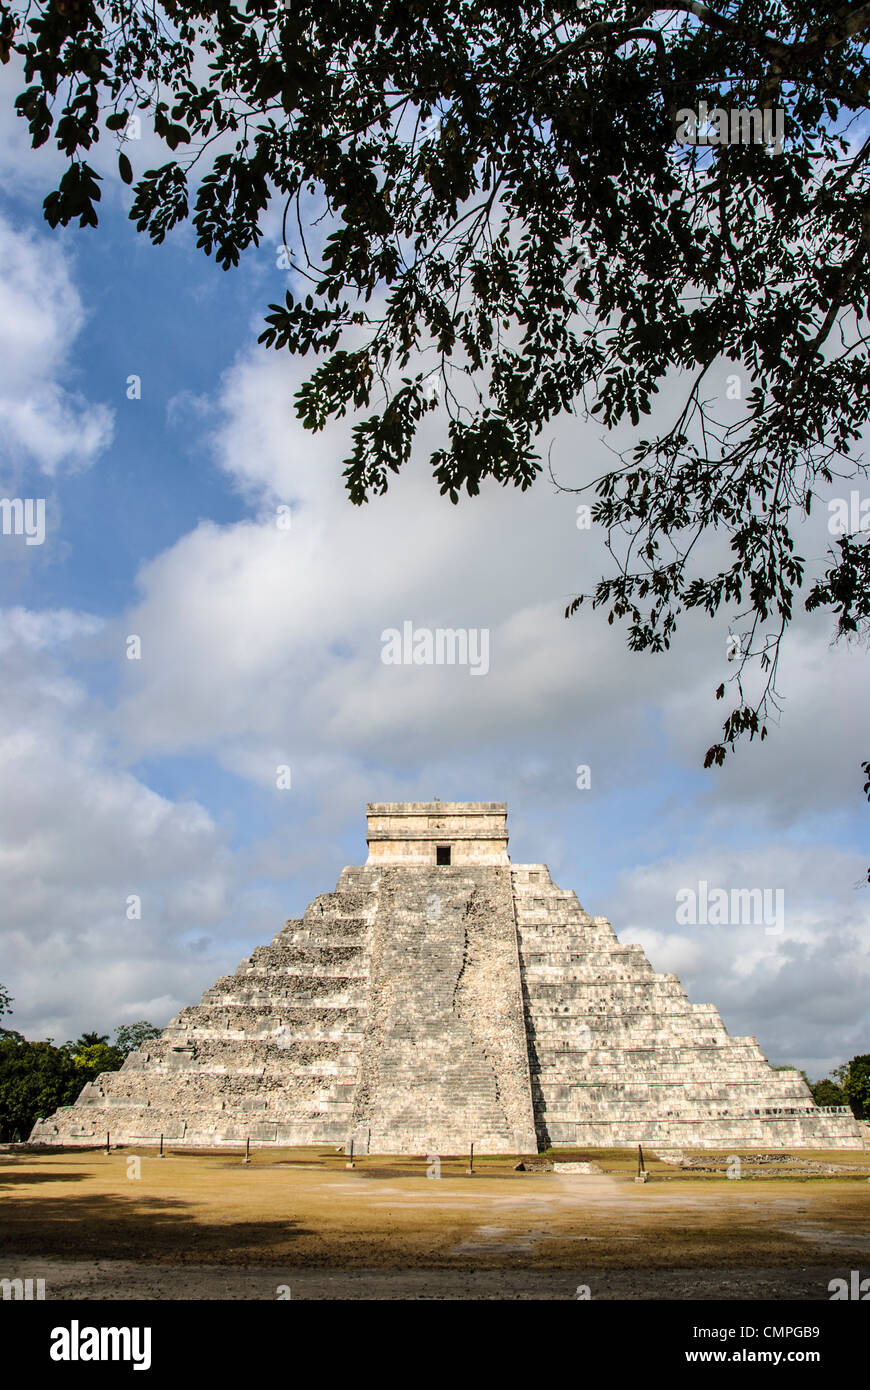 CHICHEN ITZA, Messico - Tempio di Kukulkan (El Castillo) a Chichen Itza Zona archeologica e le rovine di una grande civiltà Maya città nel cuore della Penisola dello Yucatan del Messico. Foto Stock